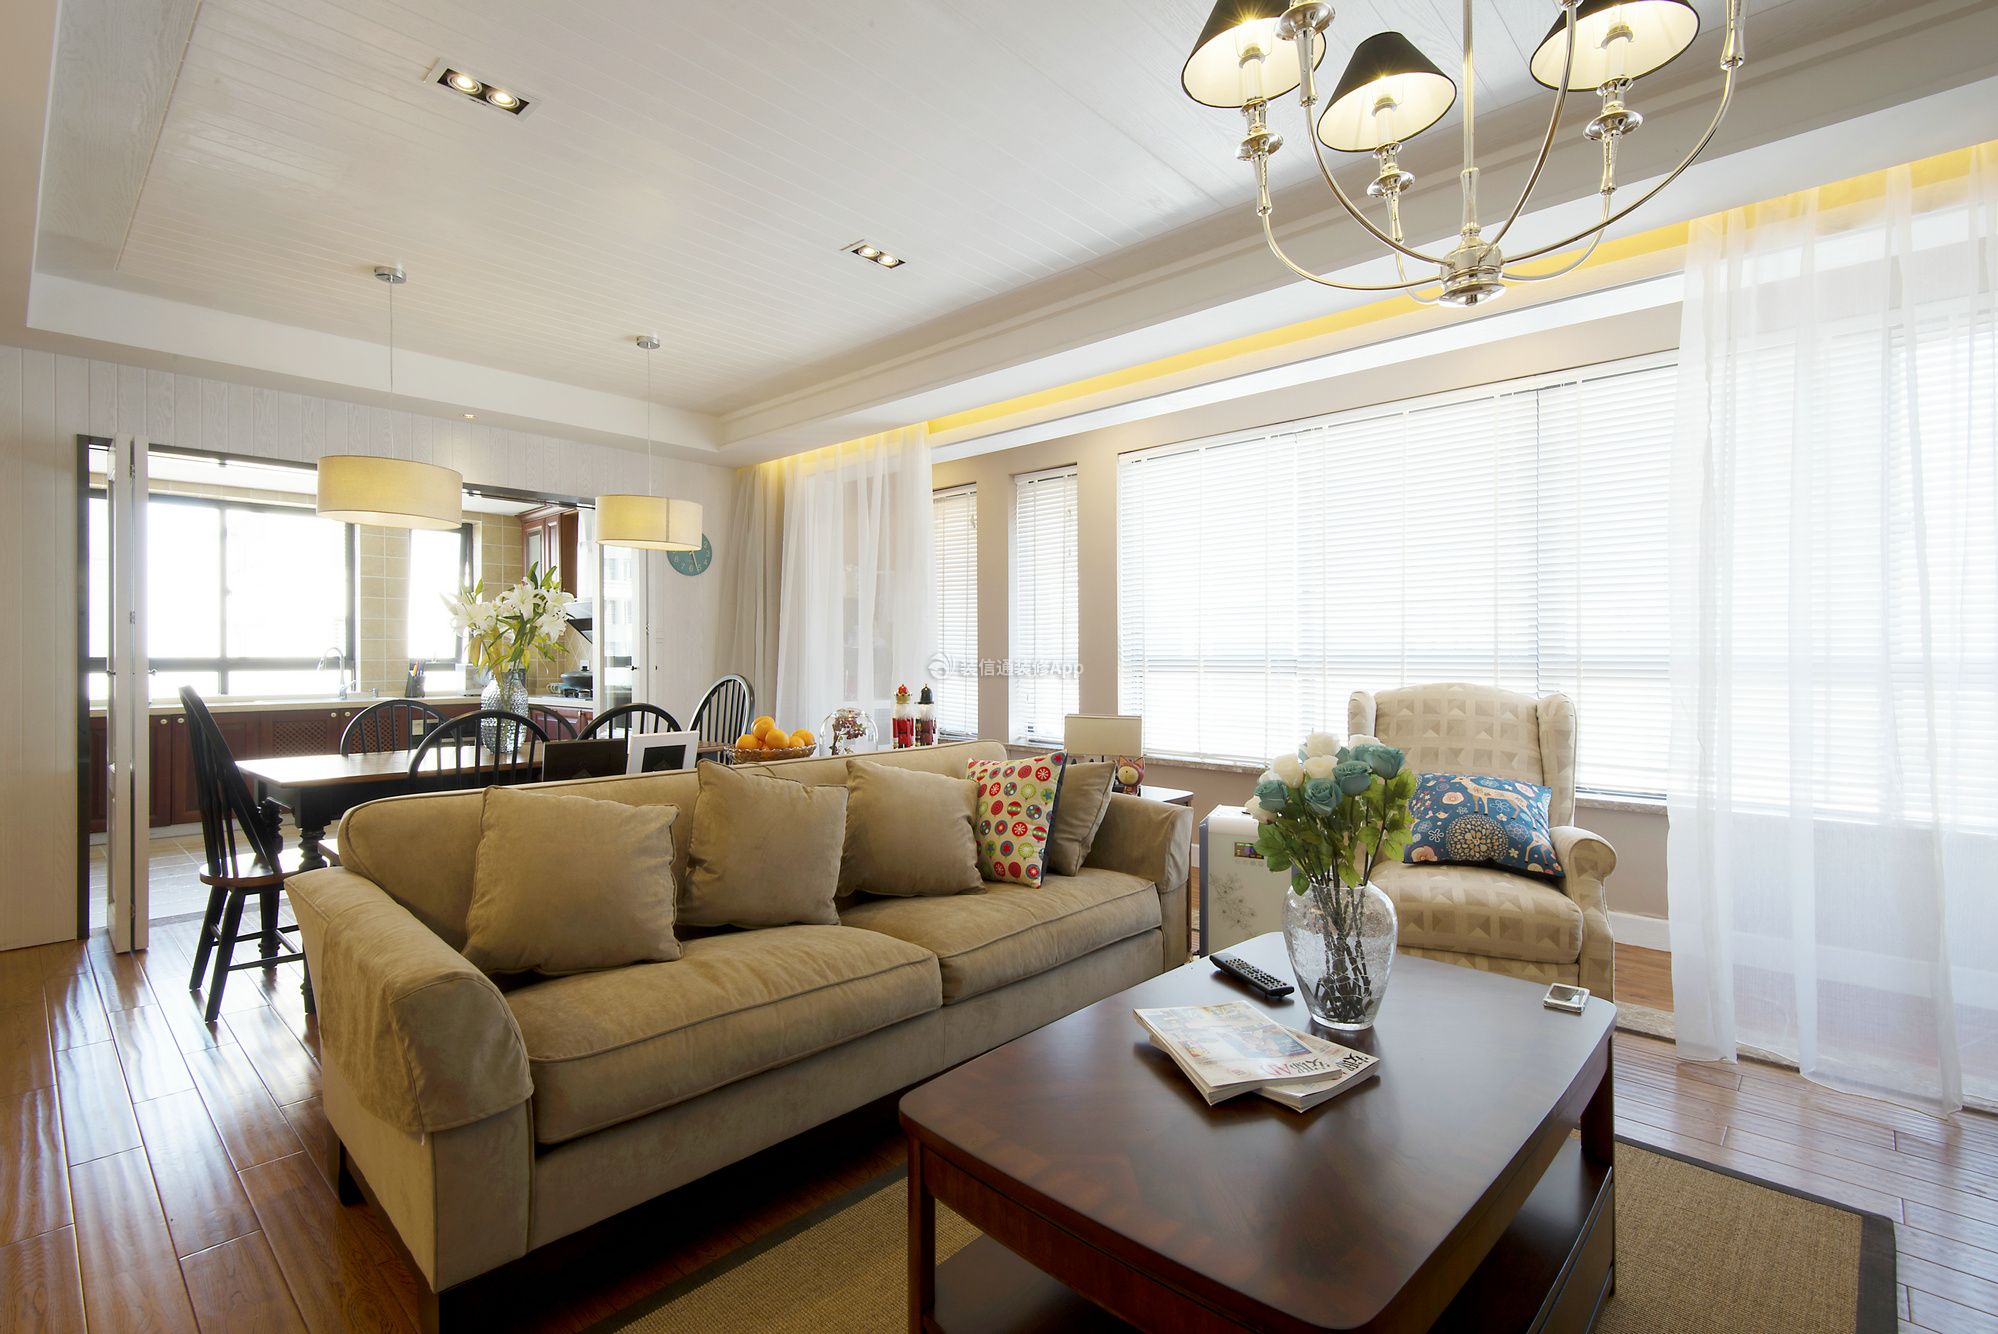 美式客厅布艺沙发装饰设计效果图片